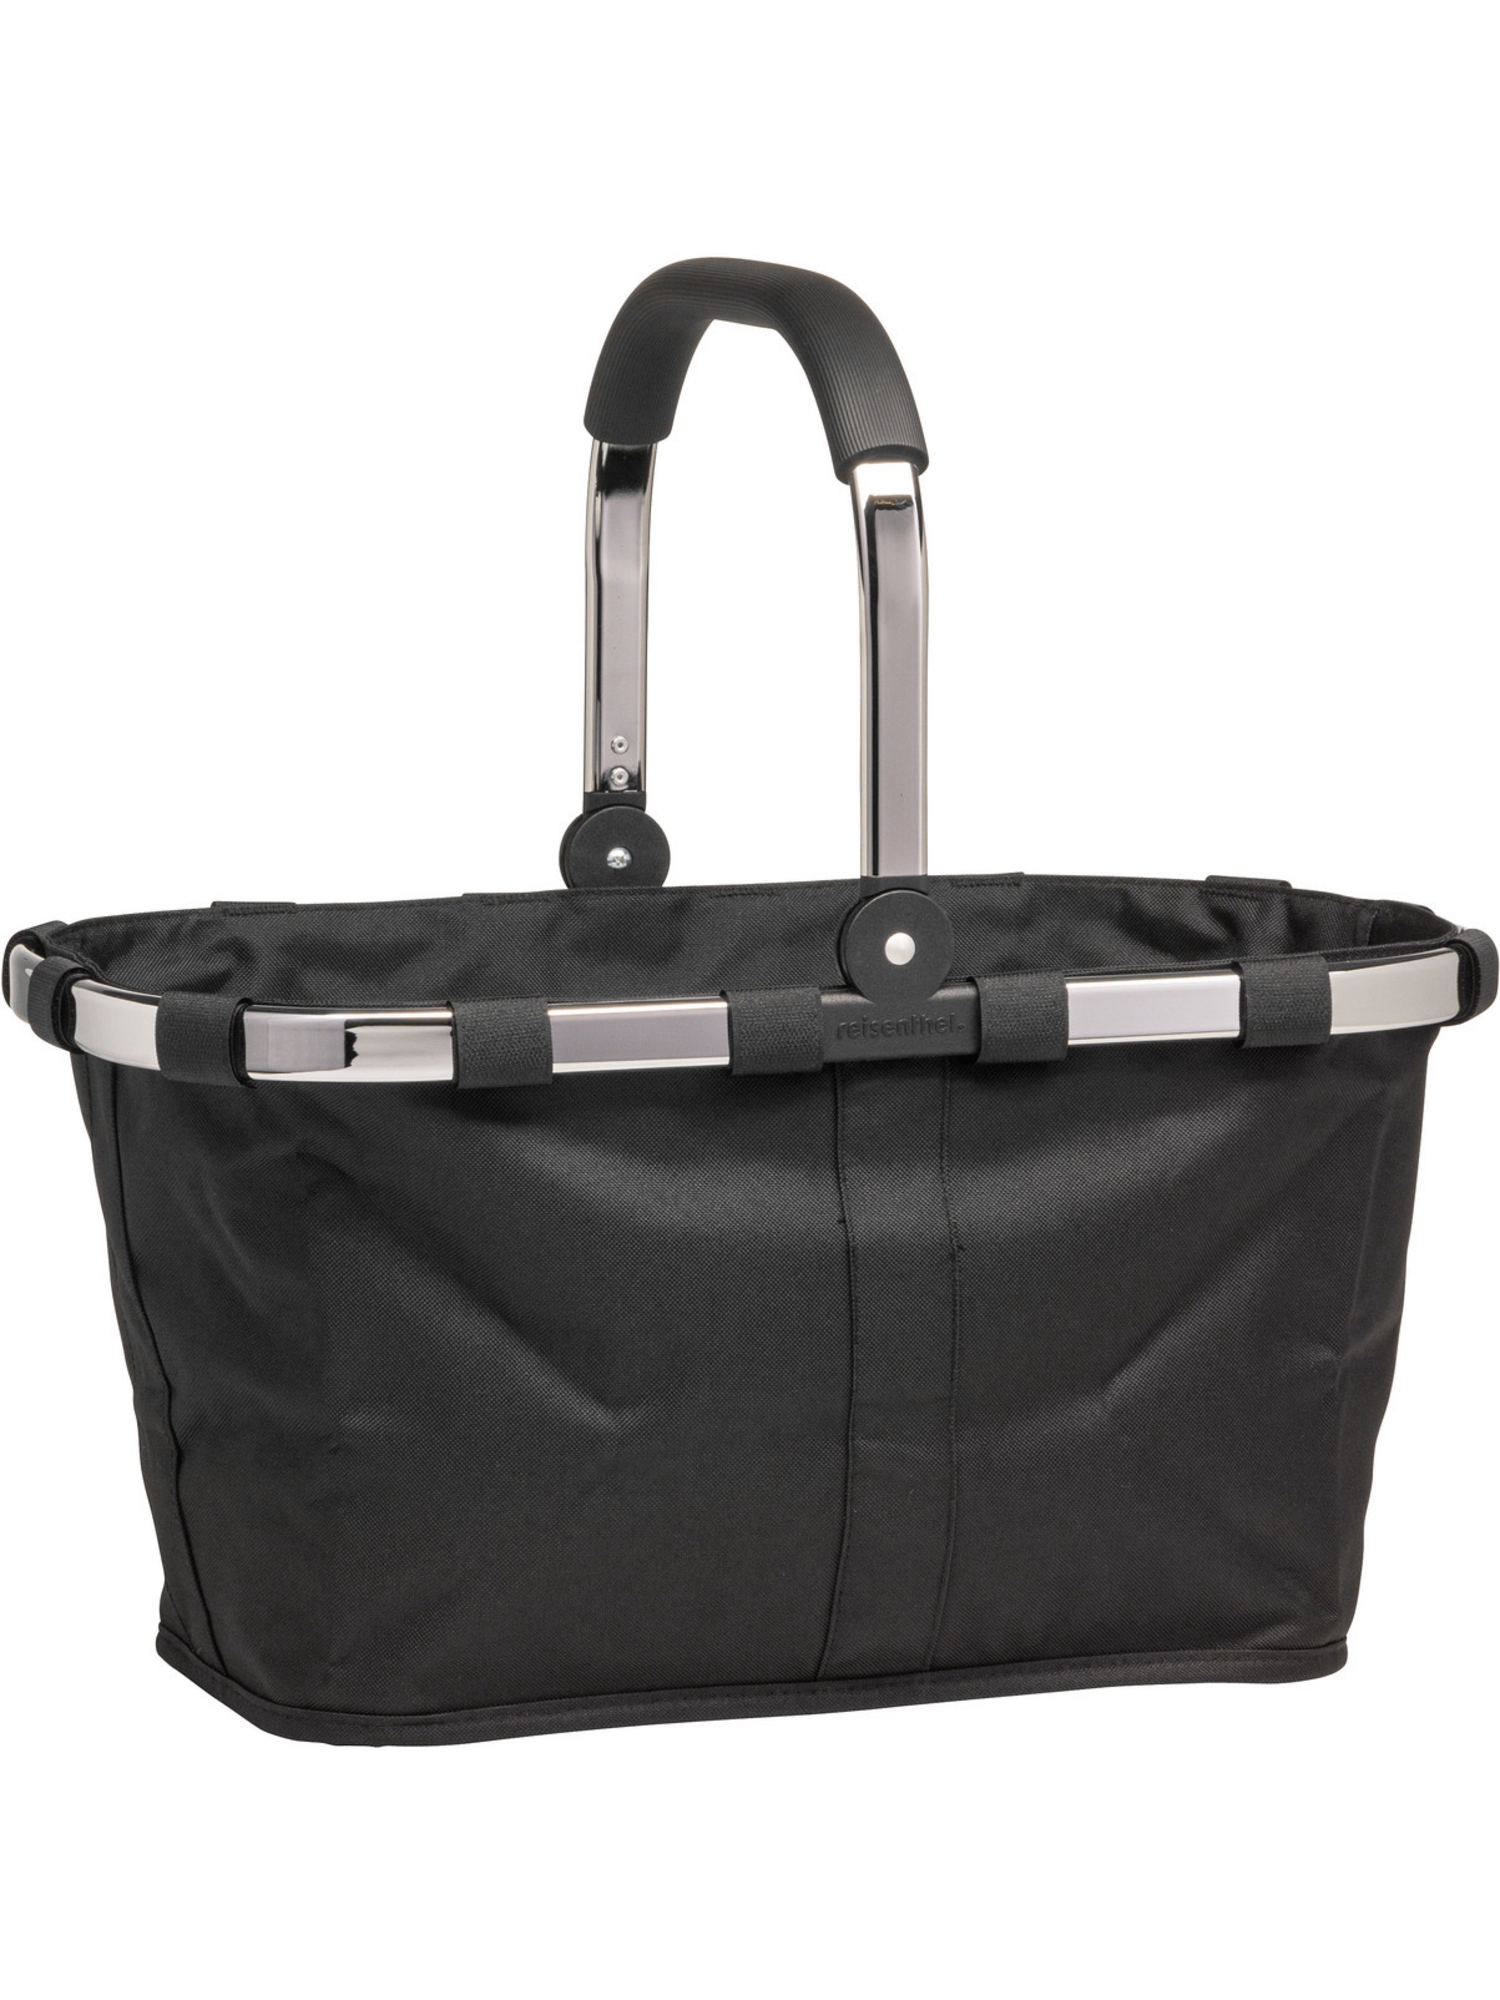 Сумка шоппер Reisenthel Einkaufstasche carrybag frame chrome, платиновый/черный